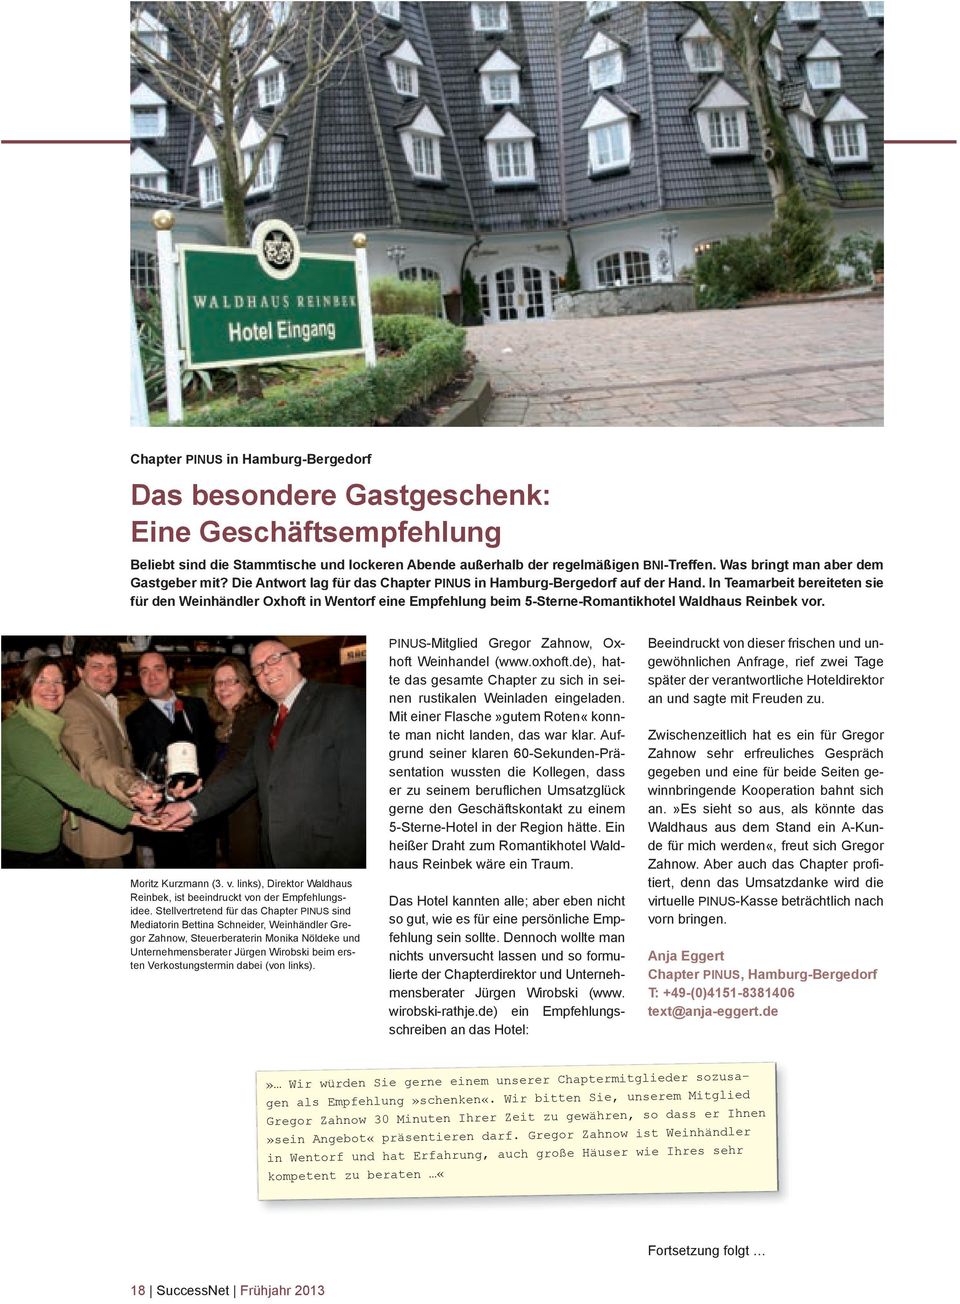 In Teamarbeit bereiteten sie für den Weinhändler Oxhoft in Wentorf eine Empfehlung beim 5-Sterne-Romantikhotel Waldhaus Reinbek vo